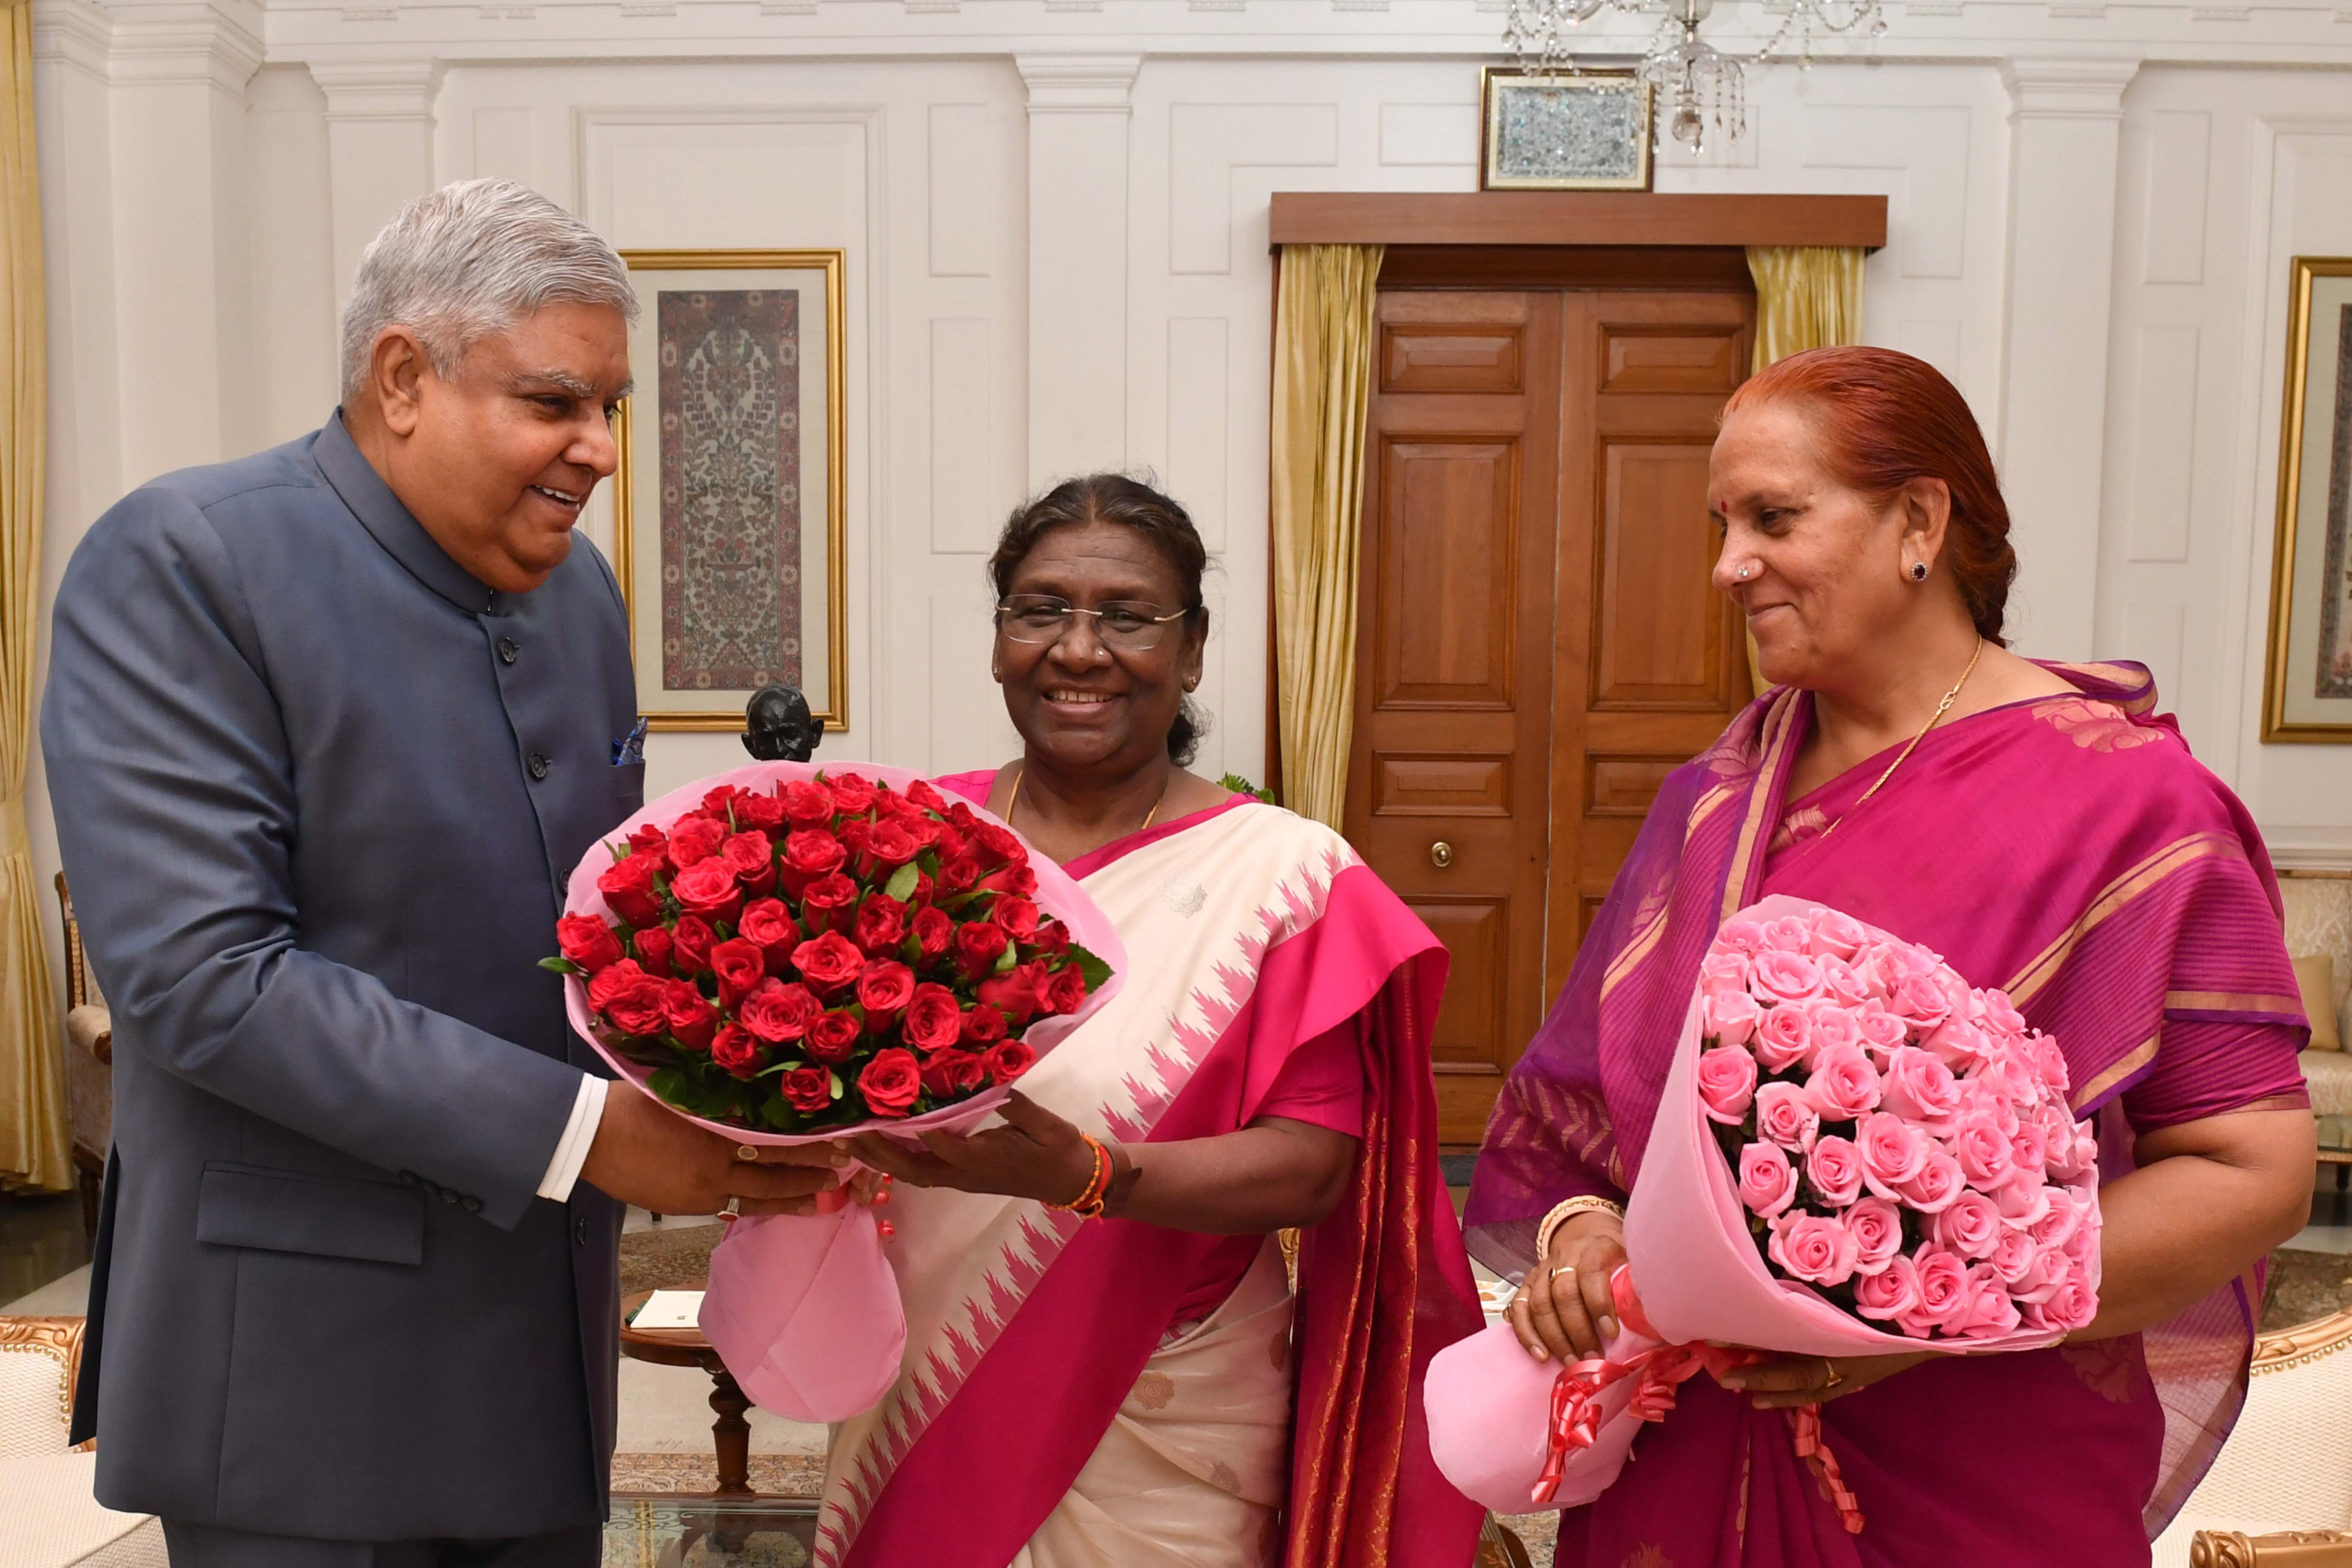 20 जून 2023 को उपराष्ट्रपति श्री जगदीप धनखड़ और उनकी धर्मपत्नी डॉ सुदेश धनखड़ ने राष्ट्रपति भवन पहुंचकर माननीय राष्ट्रपति श्रीमती द्रौपदी मुर्मू को उनके जन्मदिन पर शुभकामनाएं दी ।   